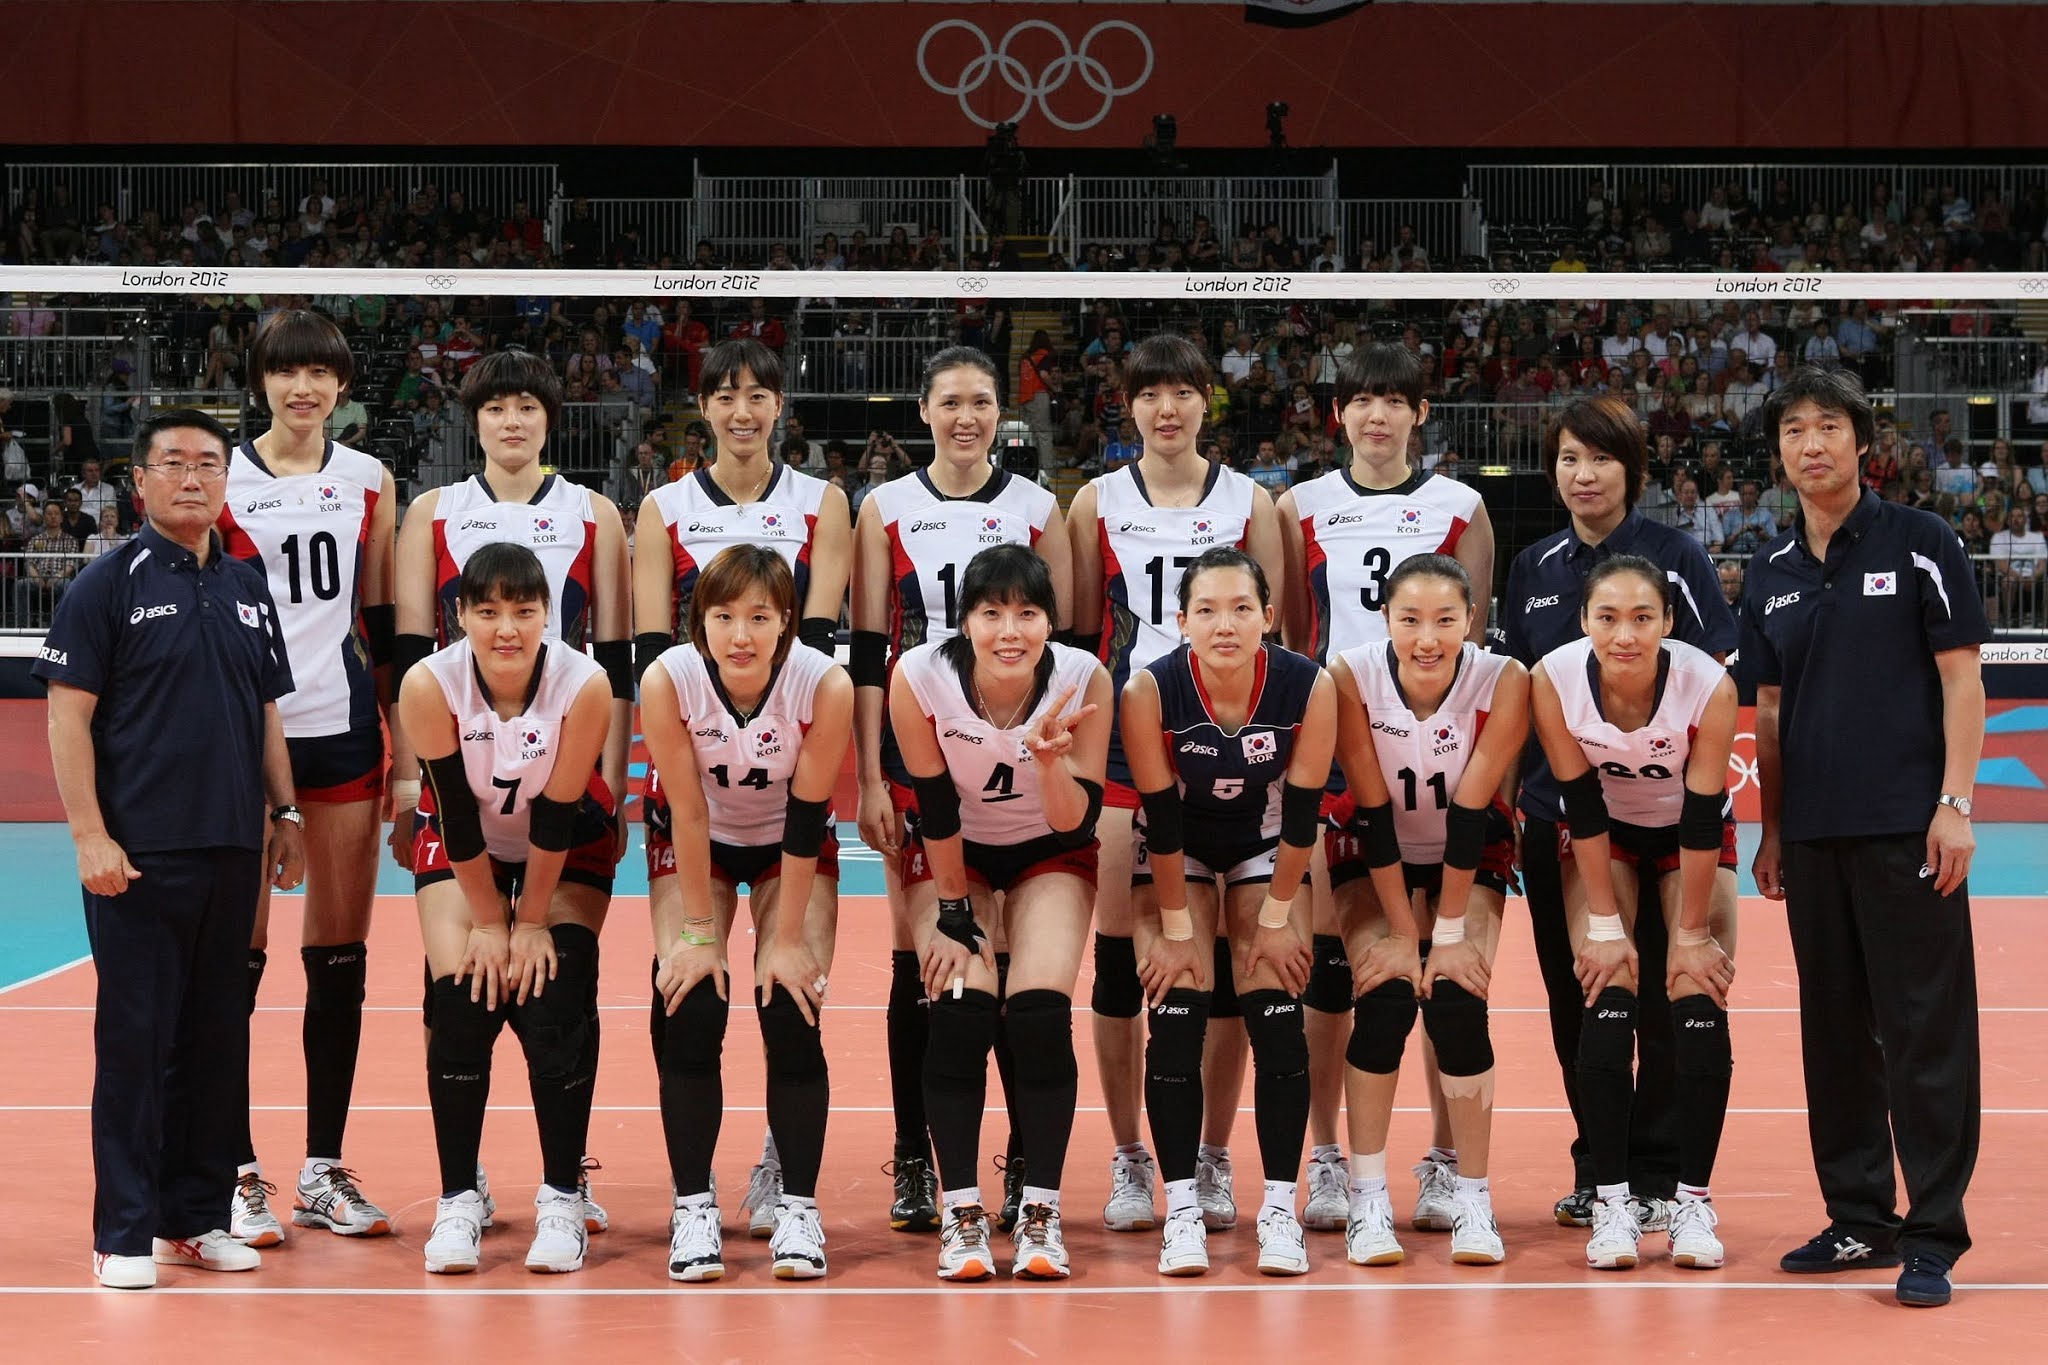 여자배구 대표팀 런던, 리우, 도쿄 올림픽 스쿼드 비교 - 짤티비